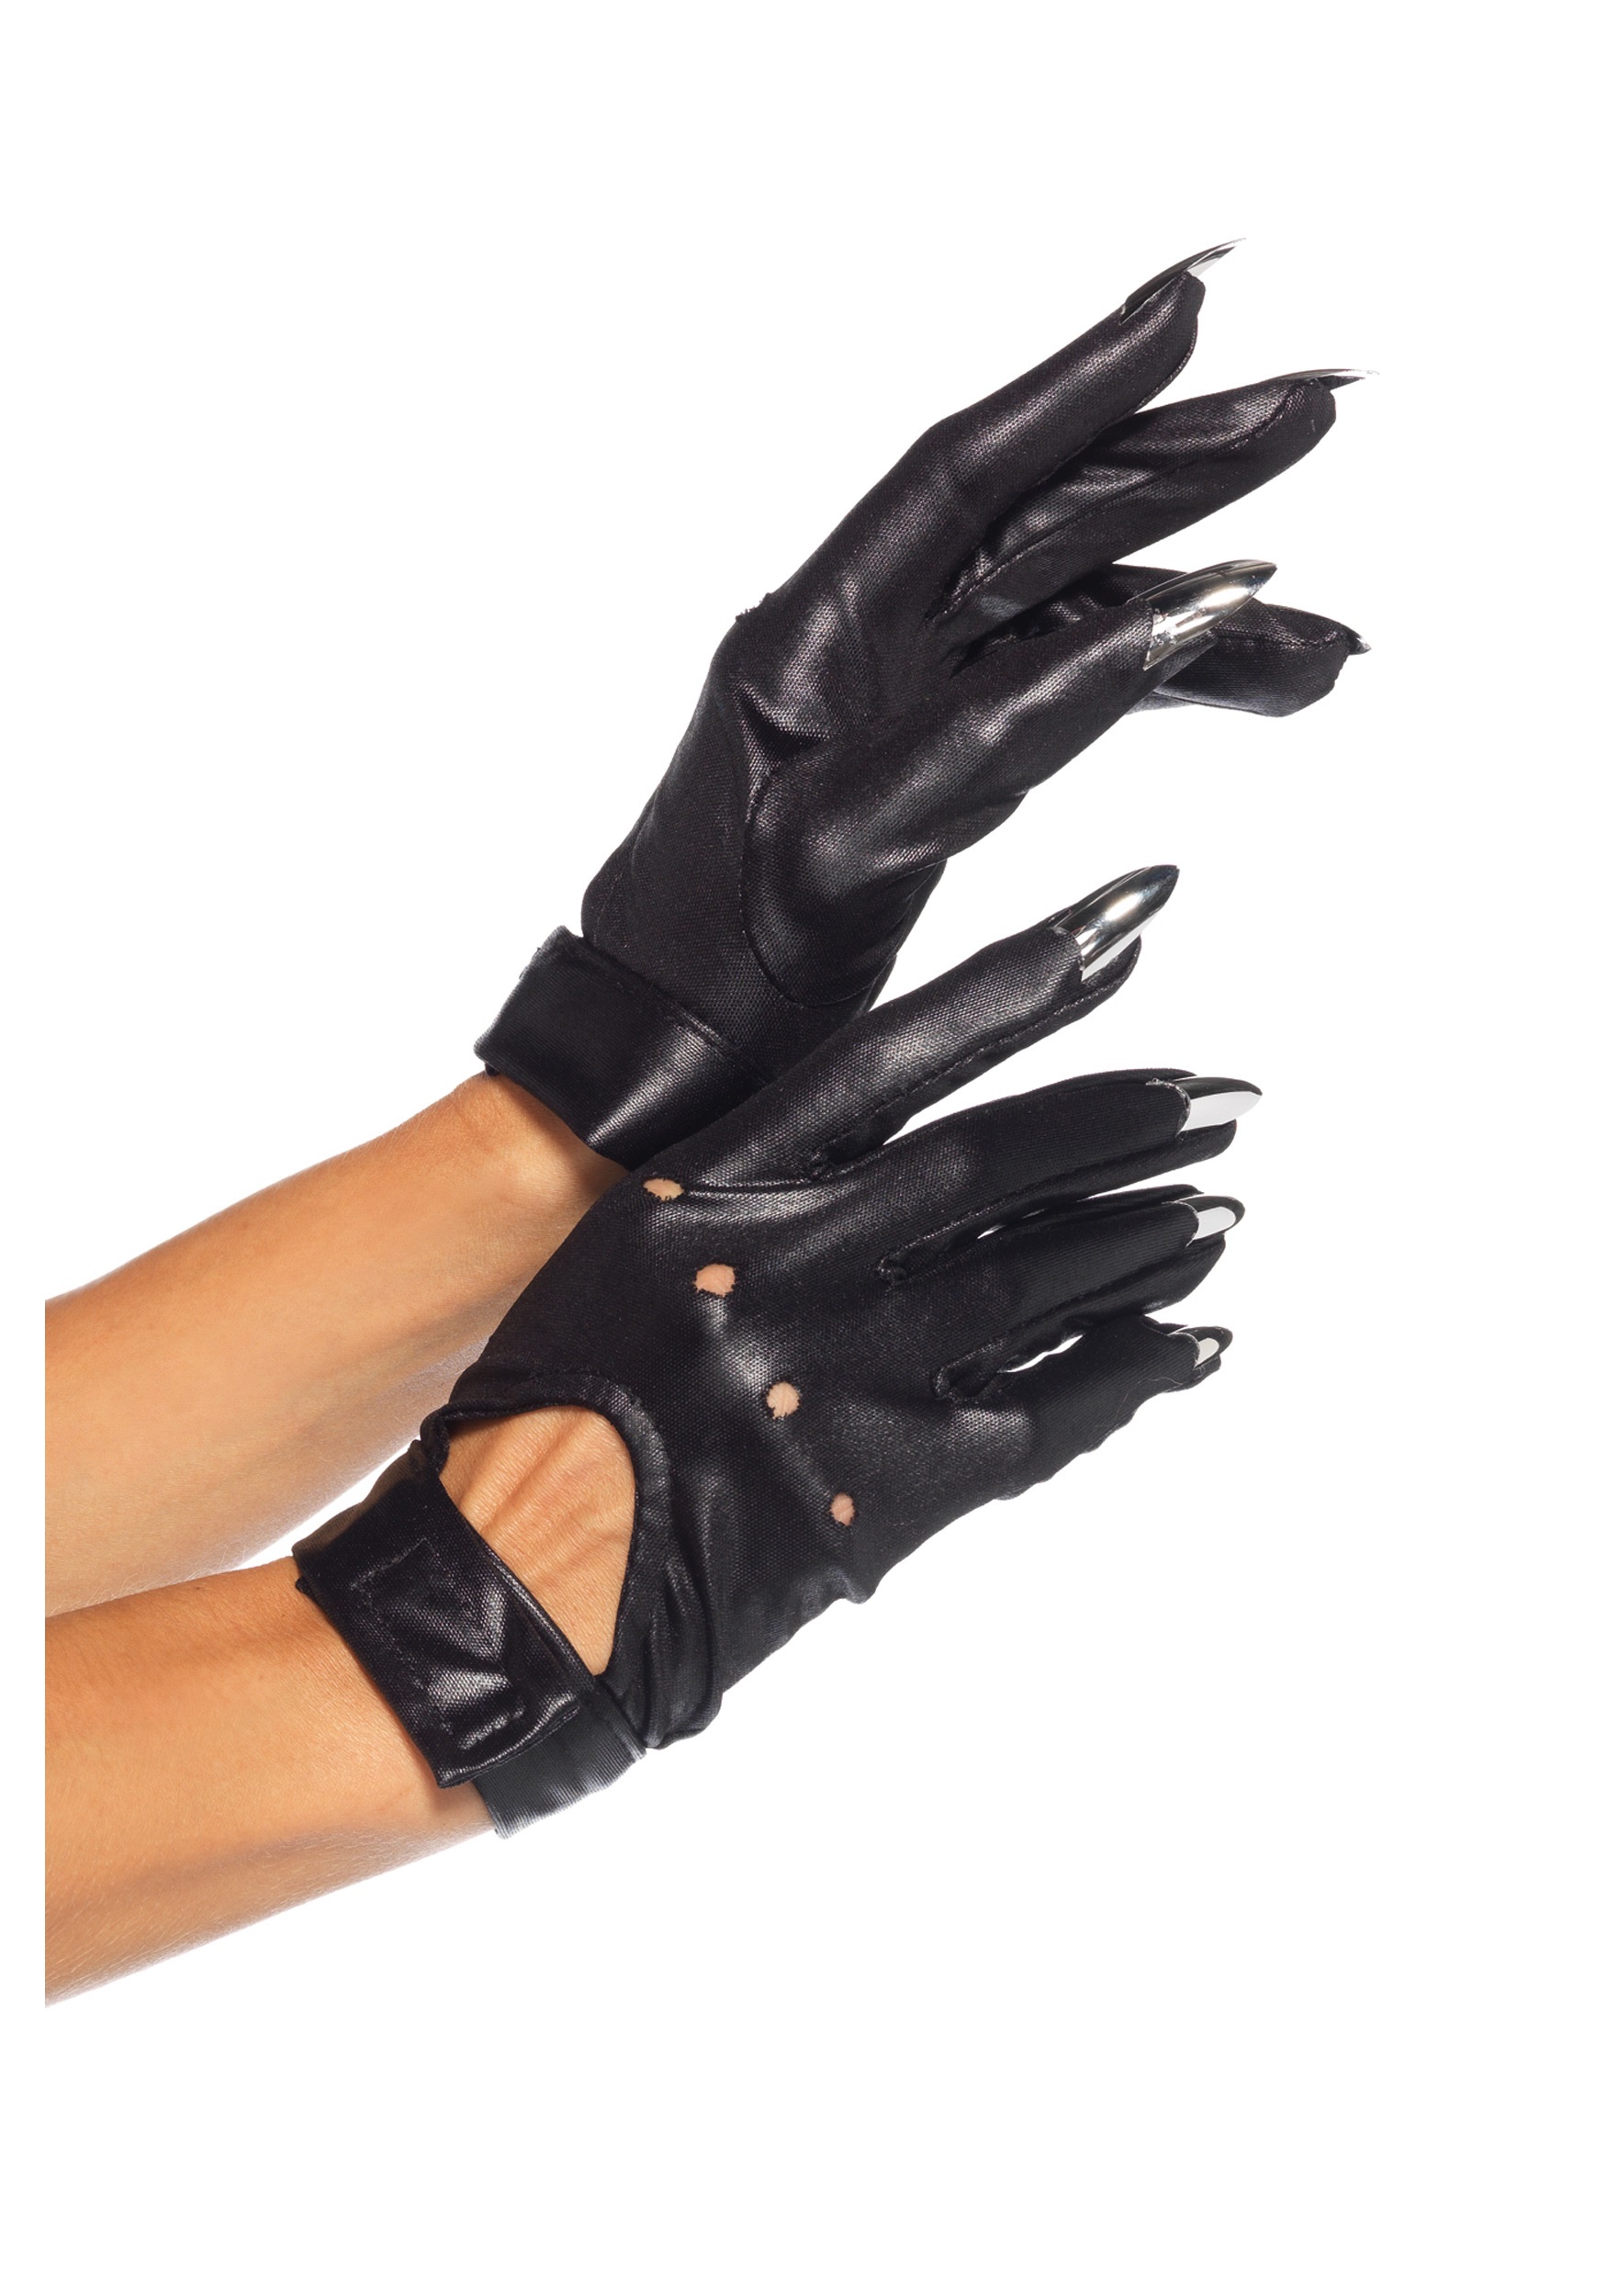 Перчатки женские рабочие. Перчатки Caterpillar Leather Gloves. Перчатки Cat Claw. Кожаные перчатки с когтями. Железные перчатки с когтями.